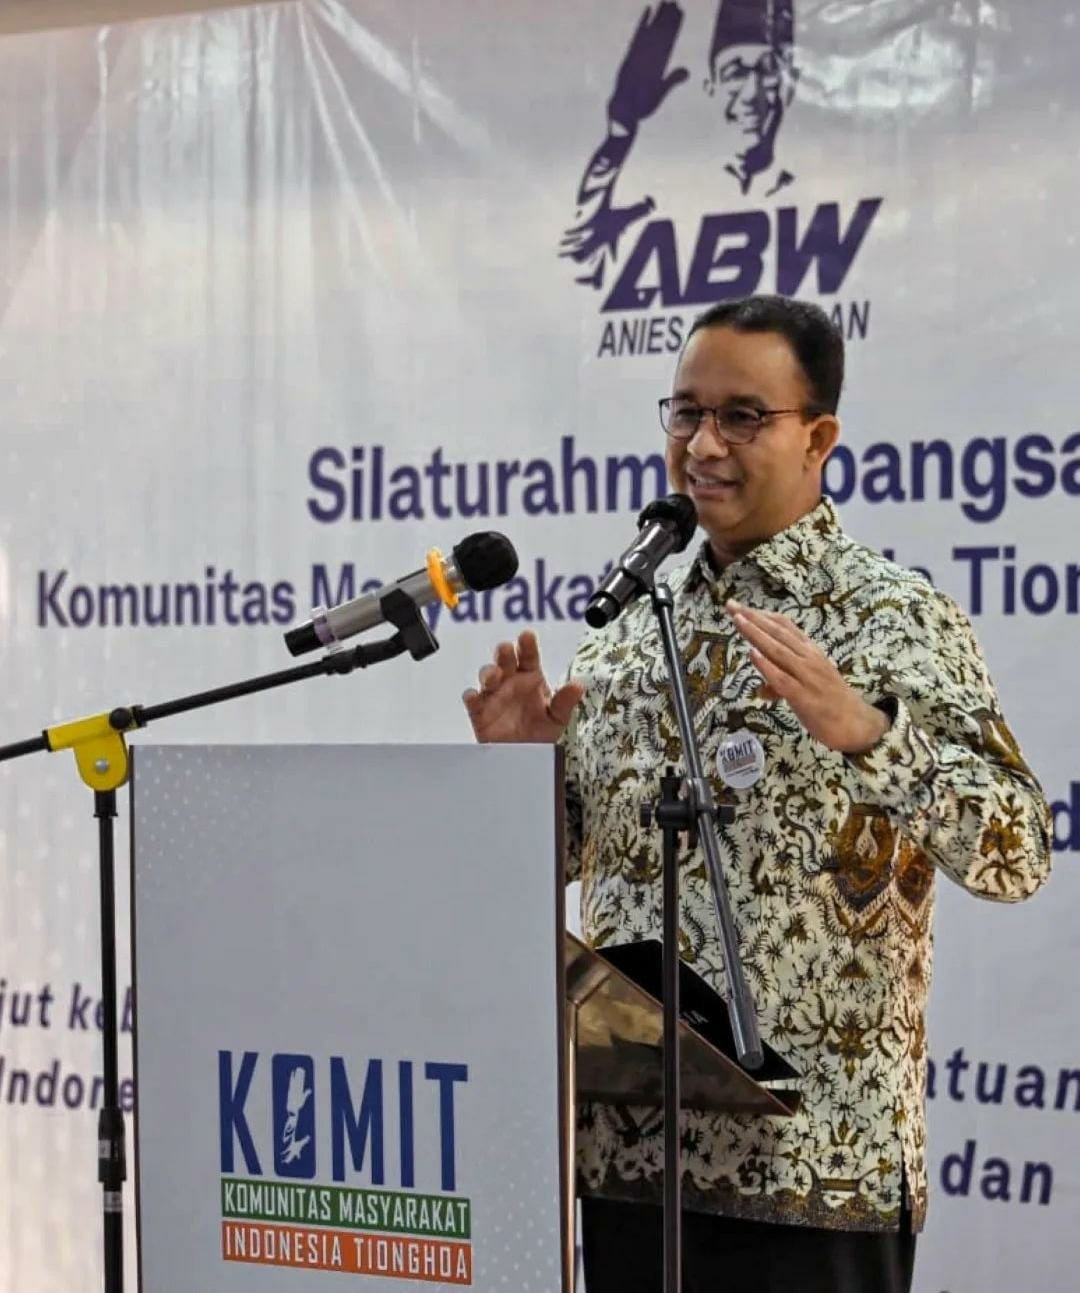 Komunitas Masyarakat Indonesia Tionghoa Berharap Anies Baswedan Melanjutkan Kinerja di Tingkat Nasional